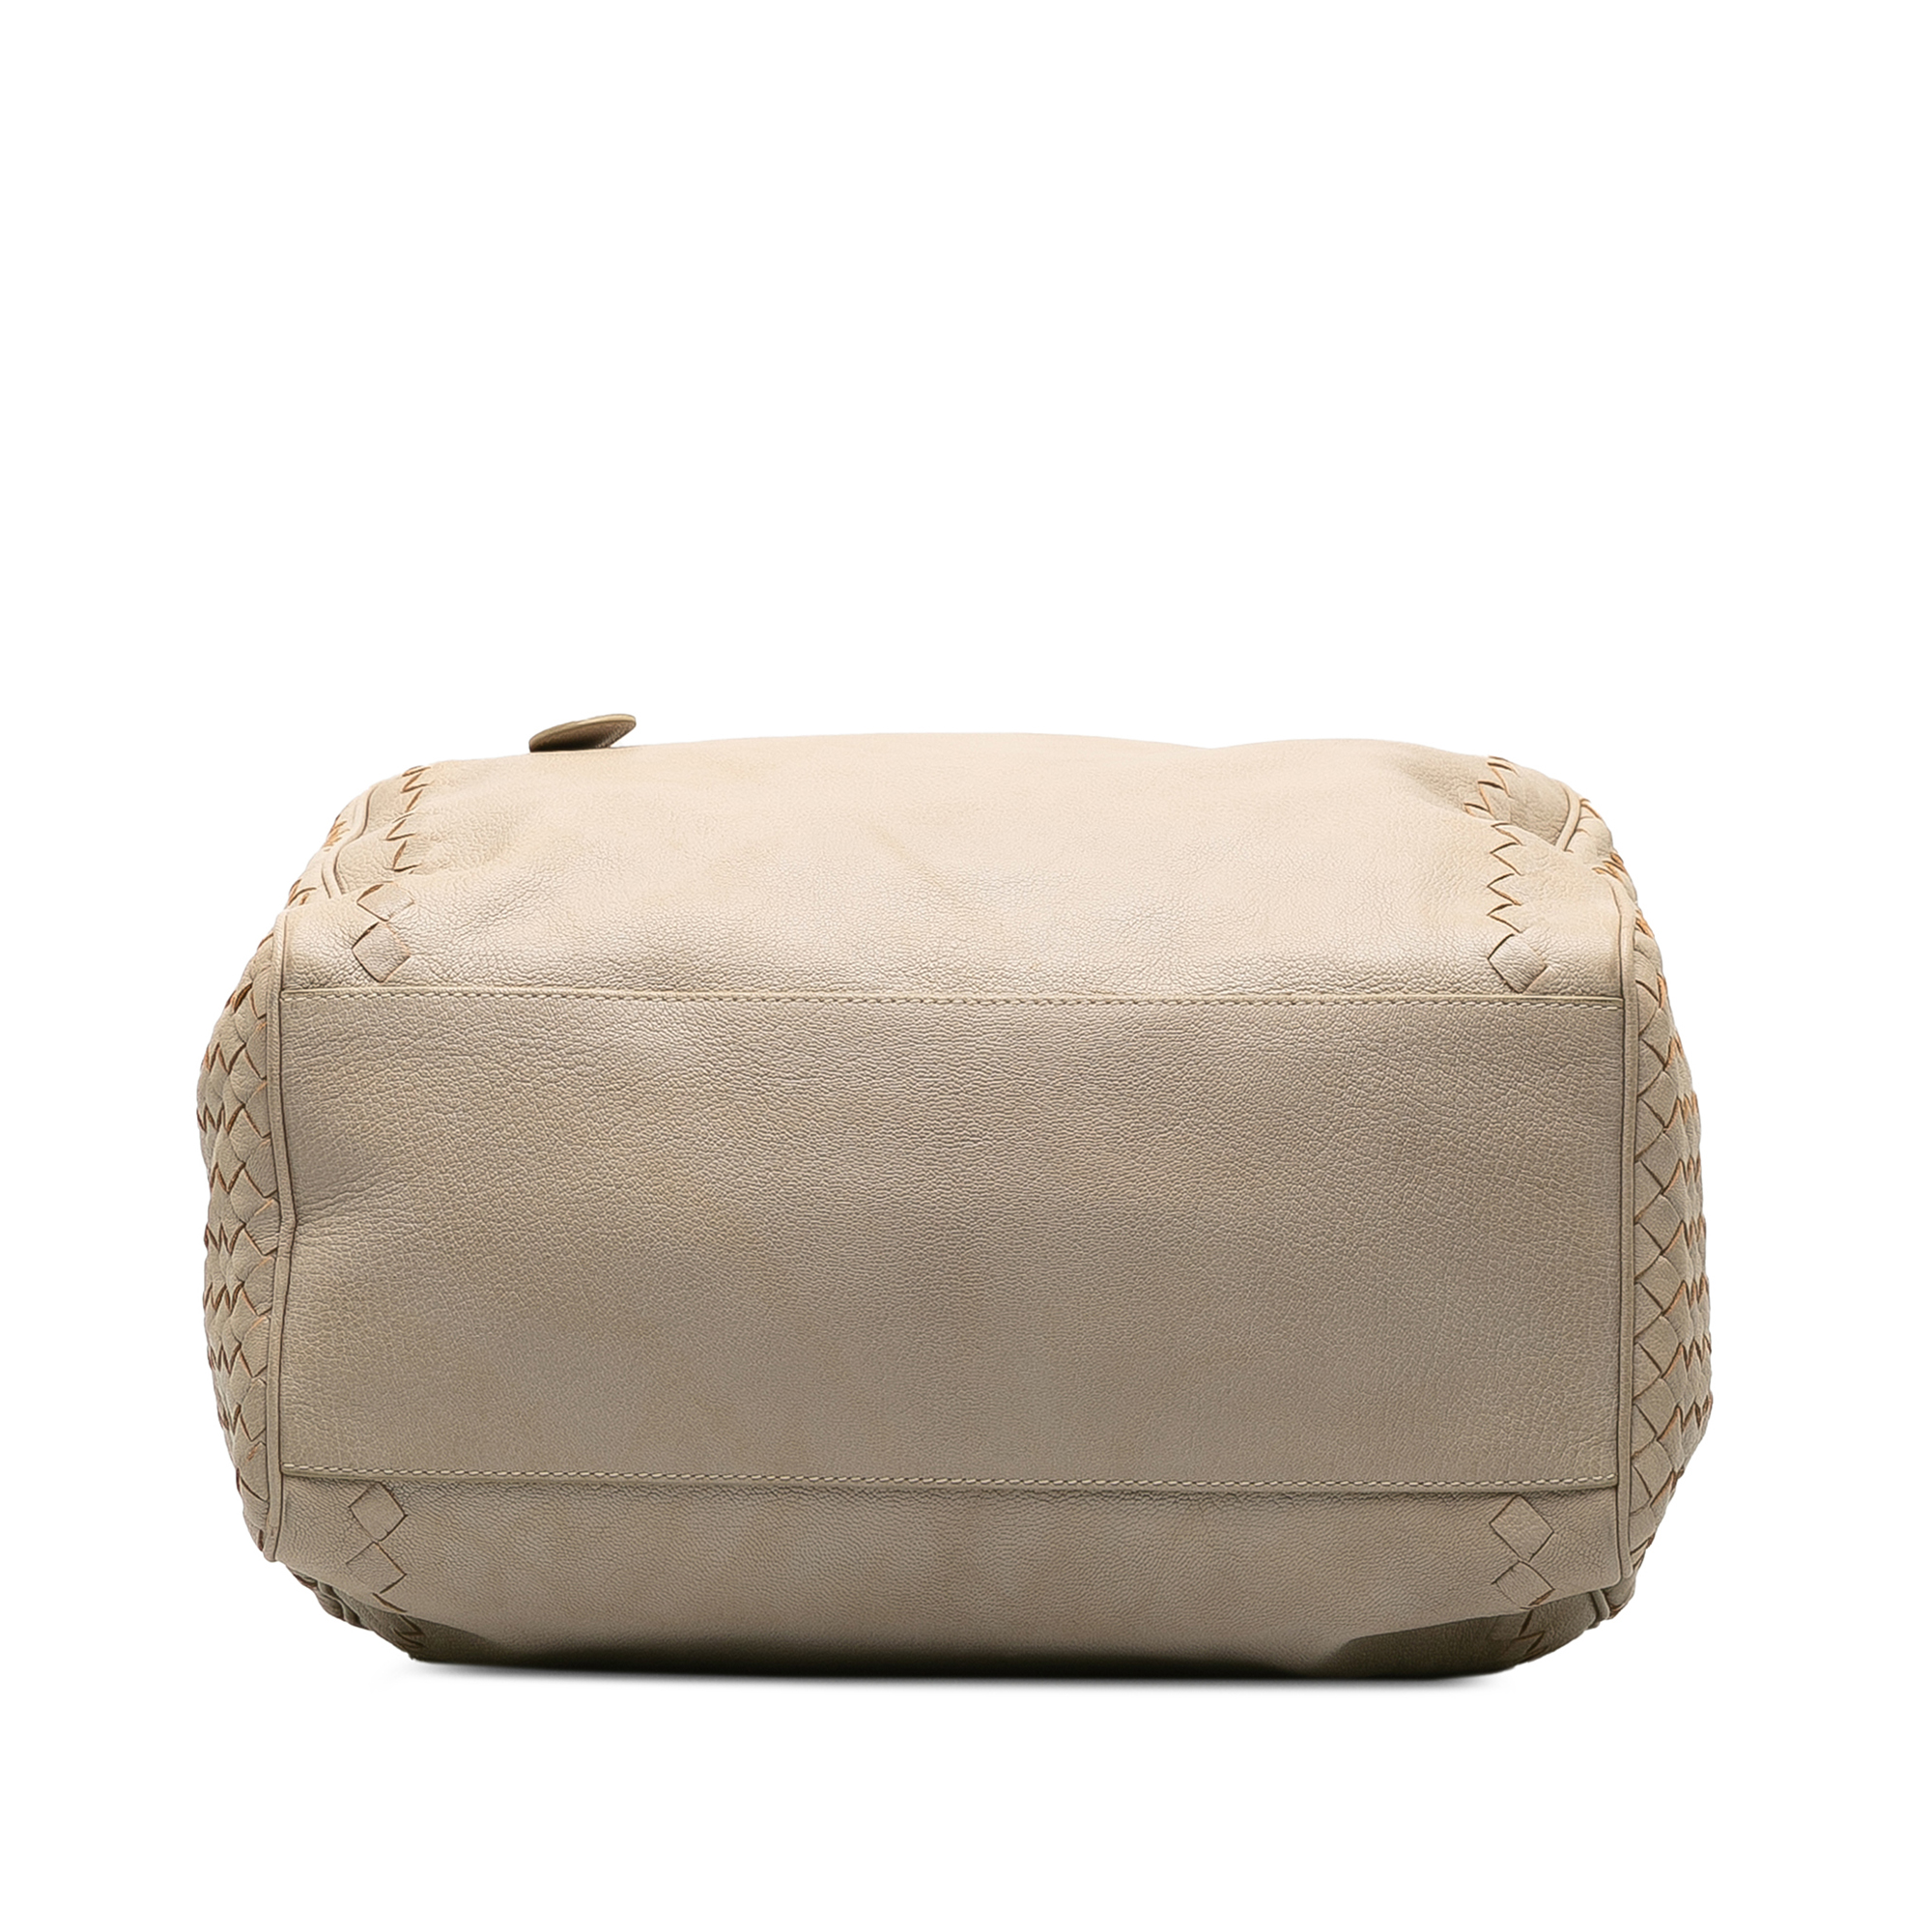 Bottega Veneta Intrecciato Handbag - Image 4 of 10